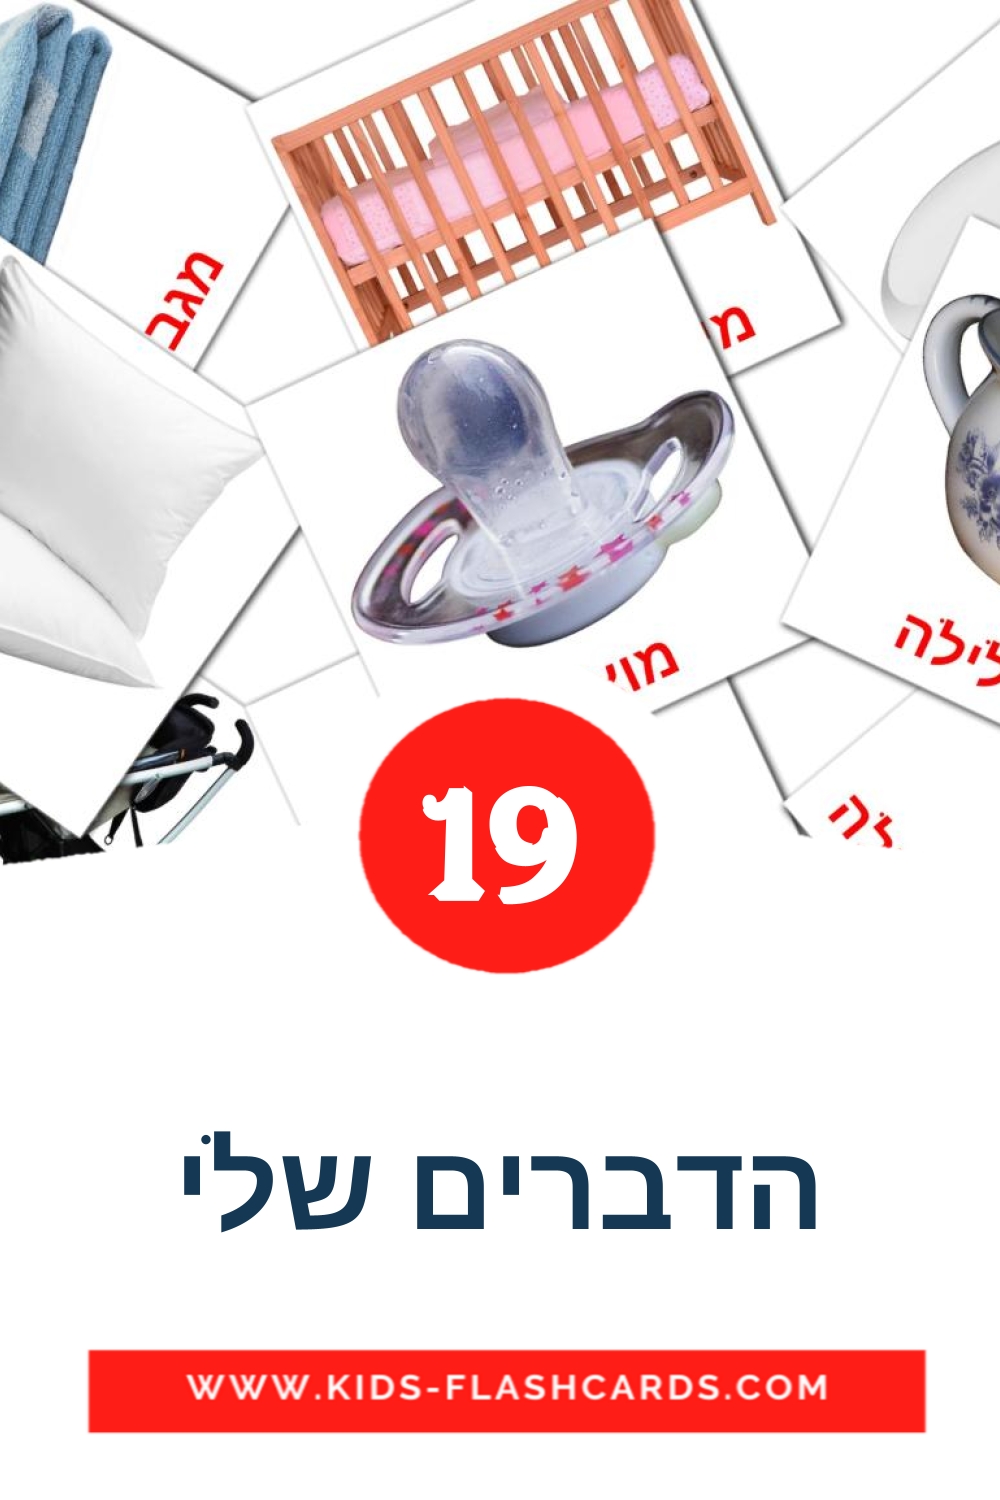 19 tarjetas didacticas de הדברים שלי para el jardín de infancia en hebreo